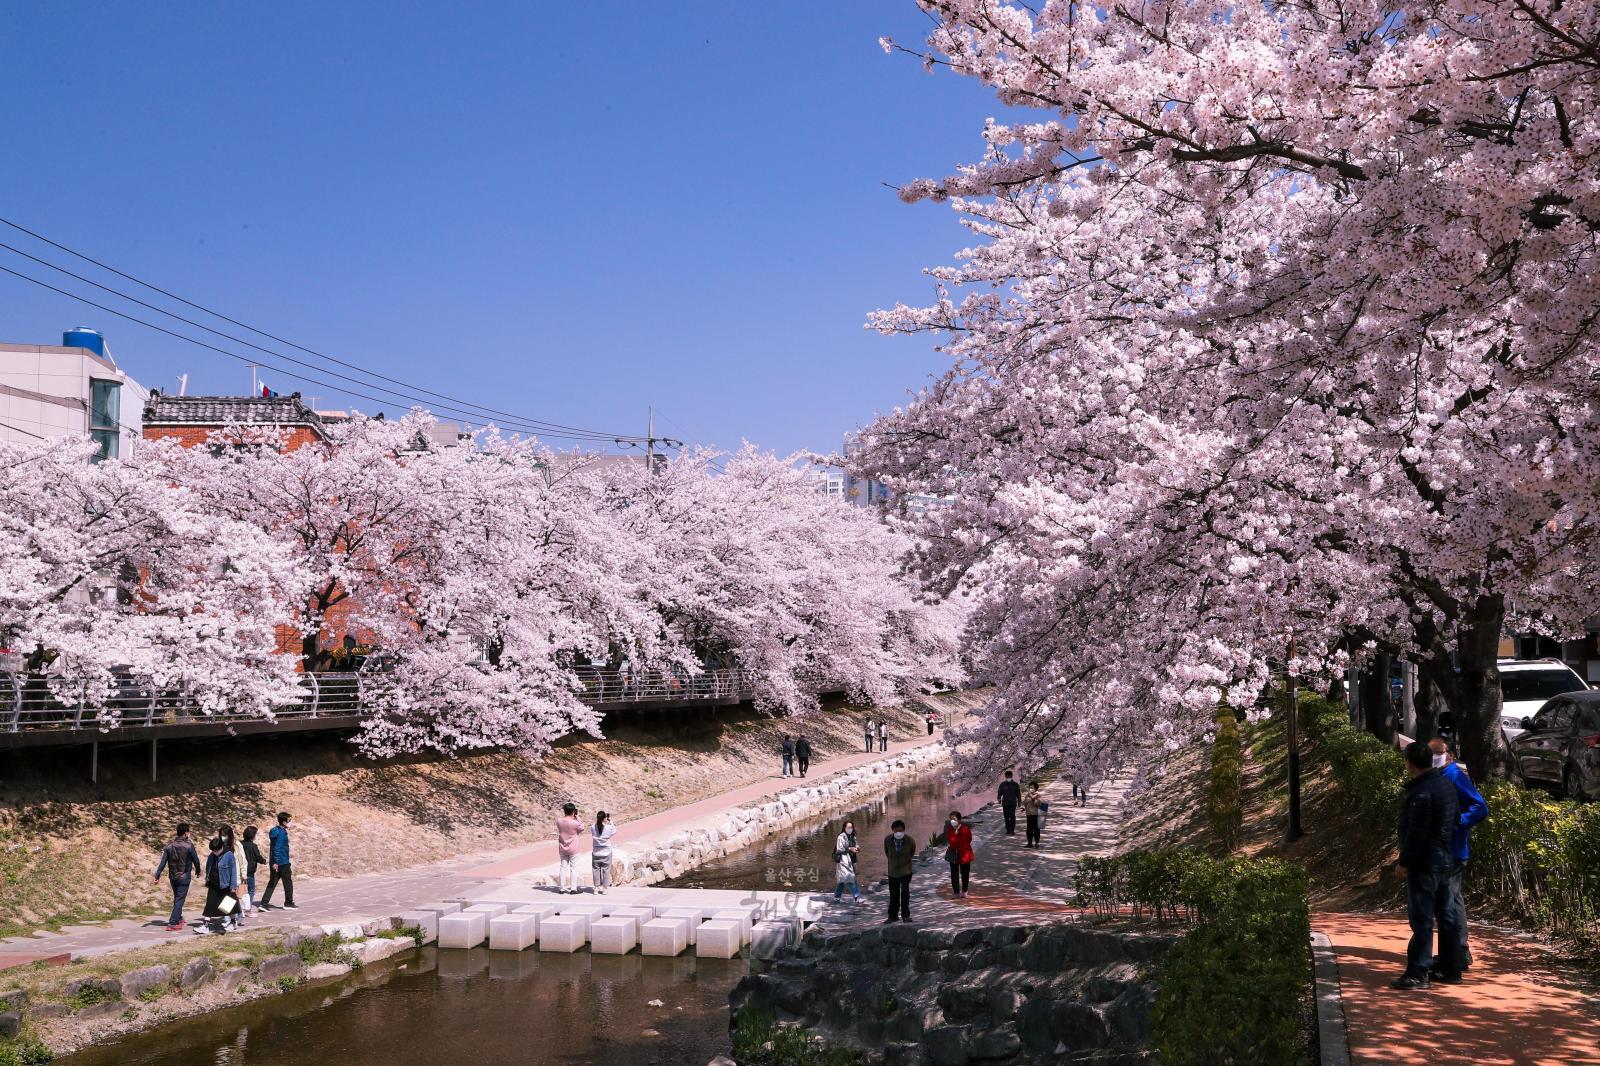 궁거랑 벚꽃길 - 울남9경 의 사진